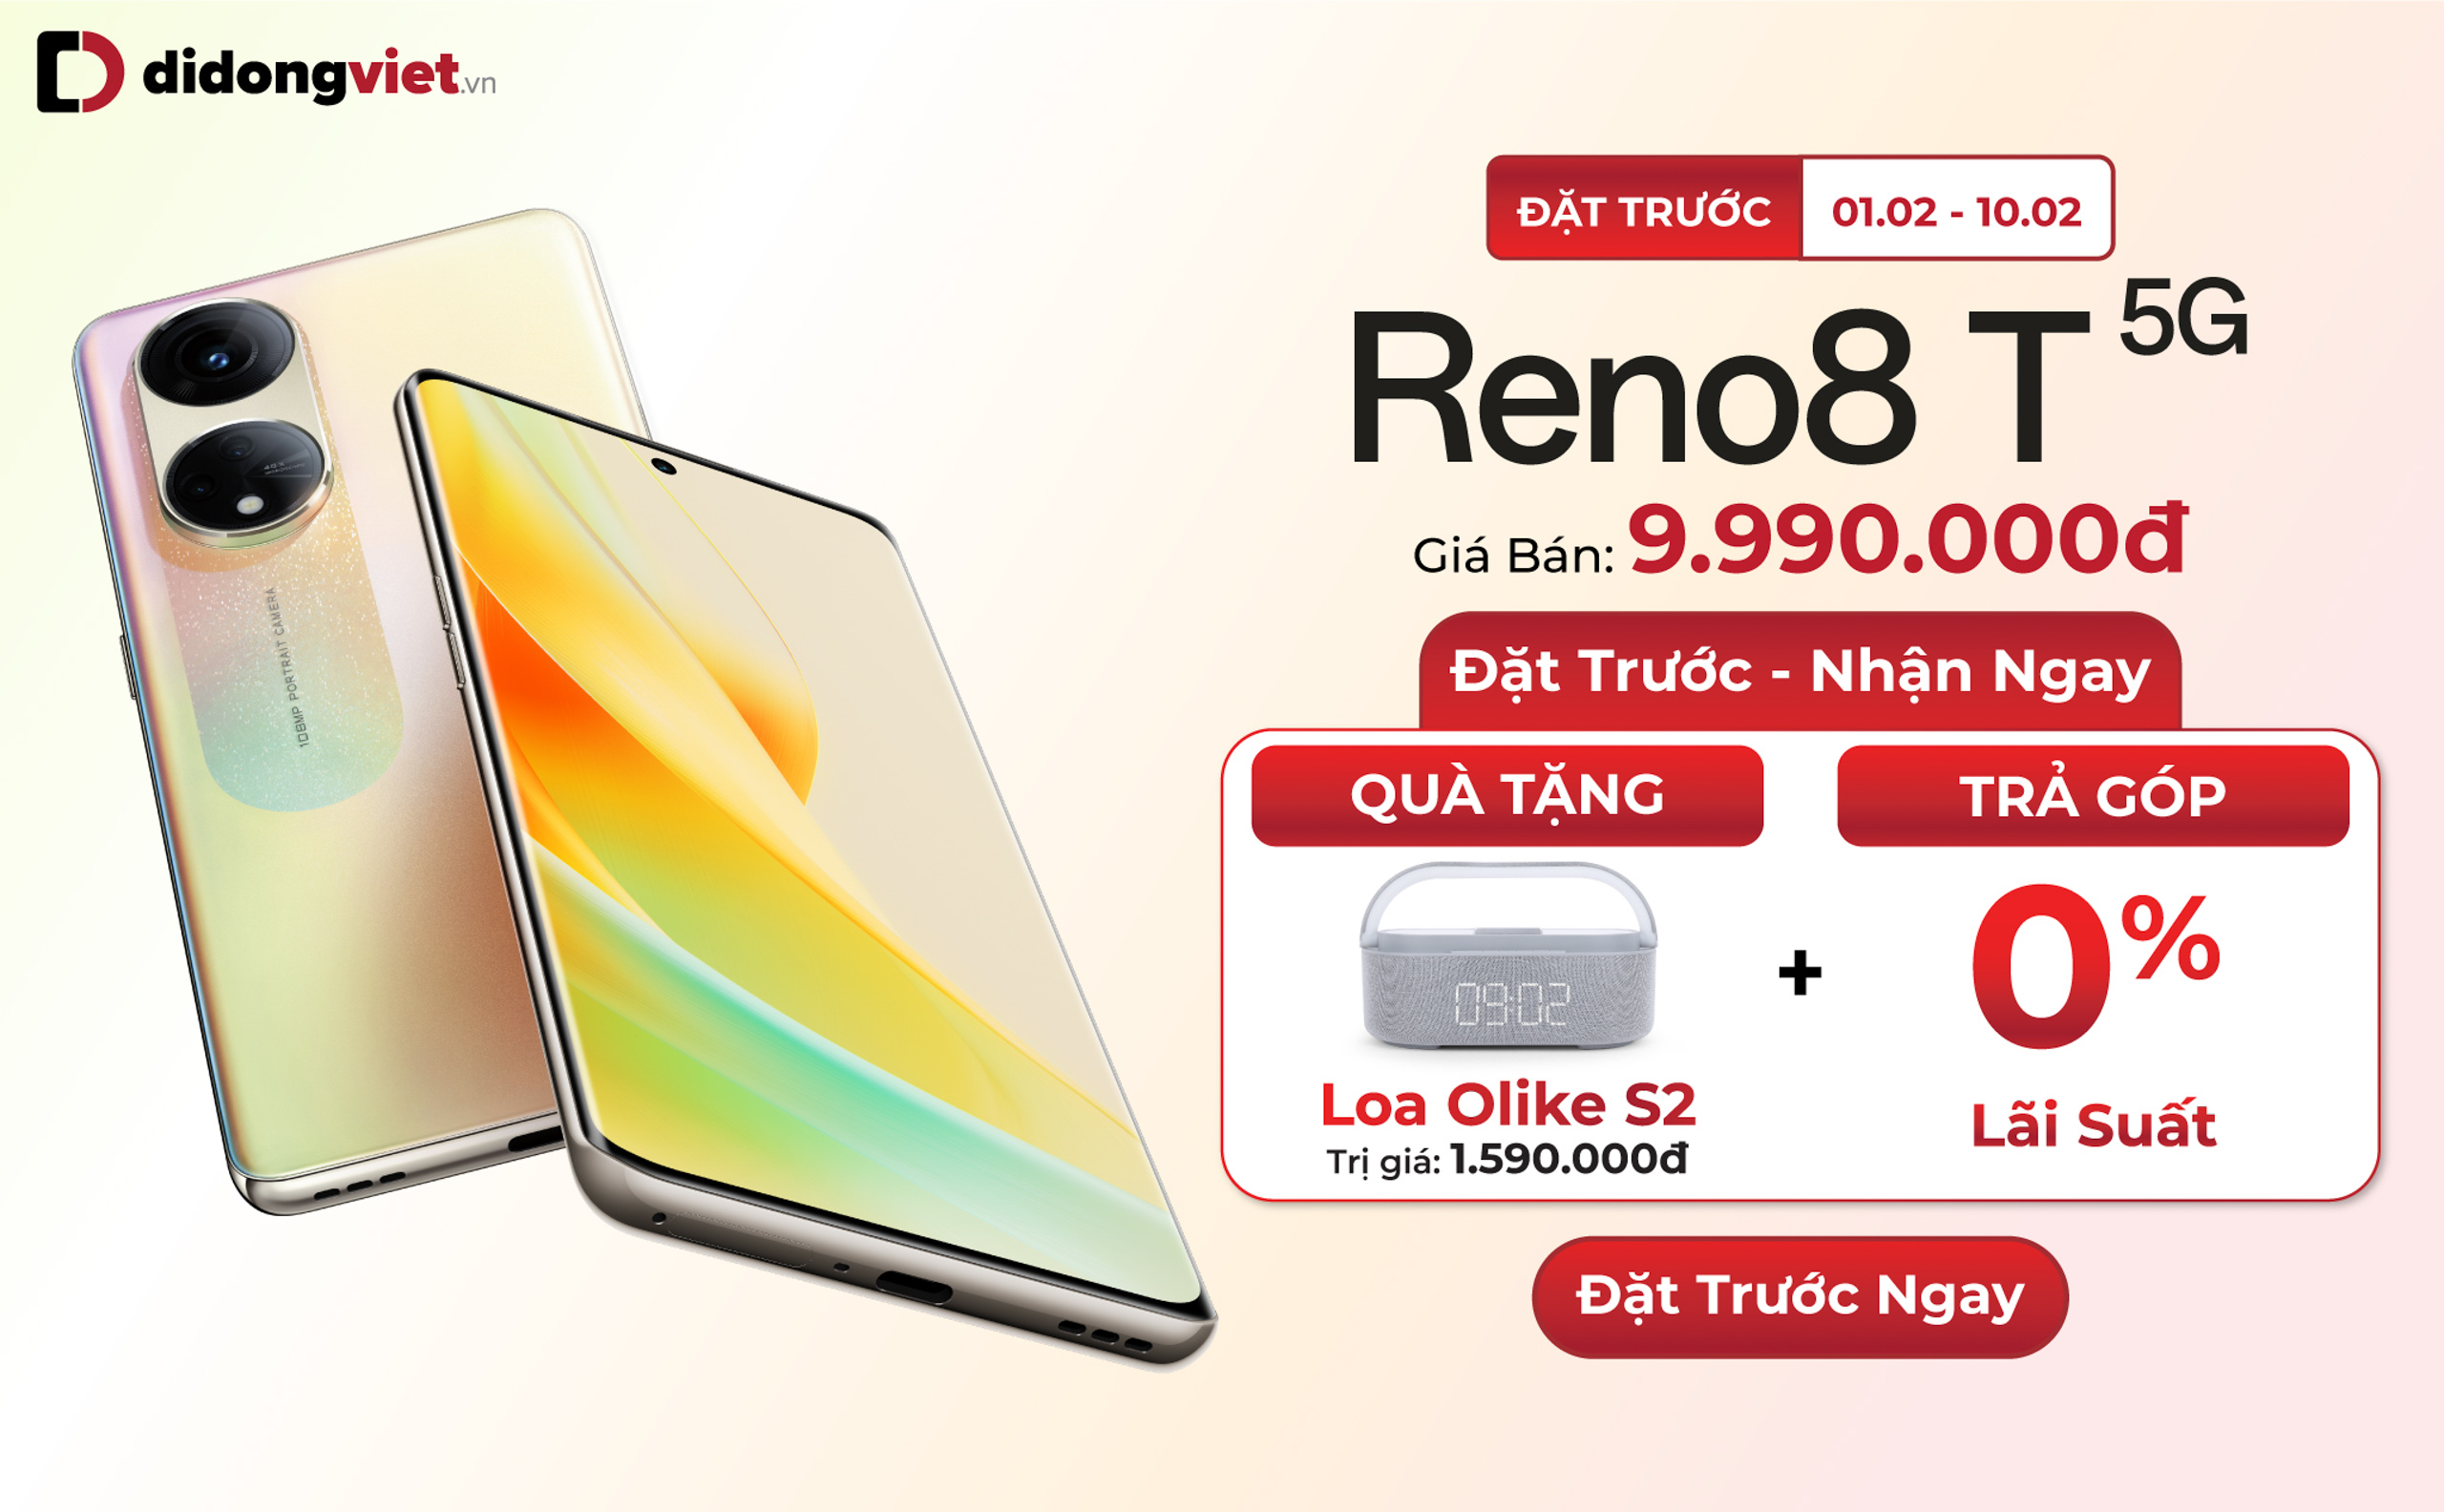 Di Động Việt nhận đặt trước OPPO Reno8 T 5G: Giá chỉ từ 9.99 triệu đồng, quà tặng trị giá đến 3.8 triệu đồng